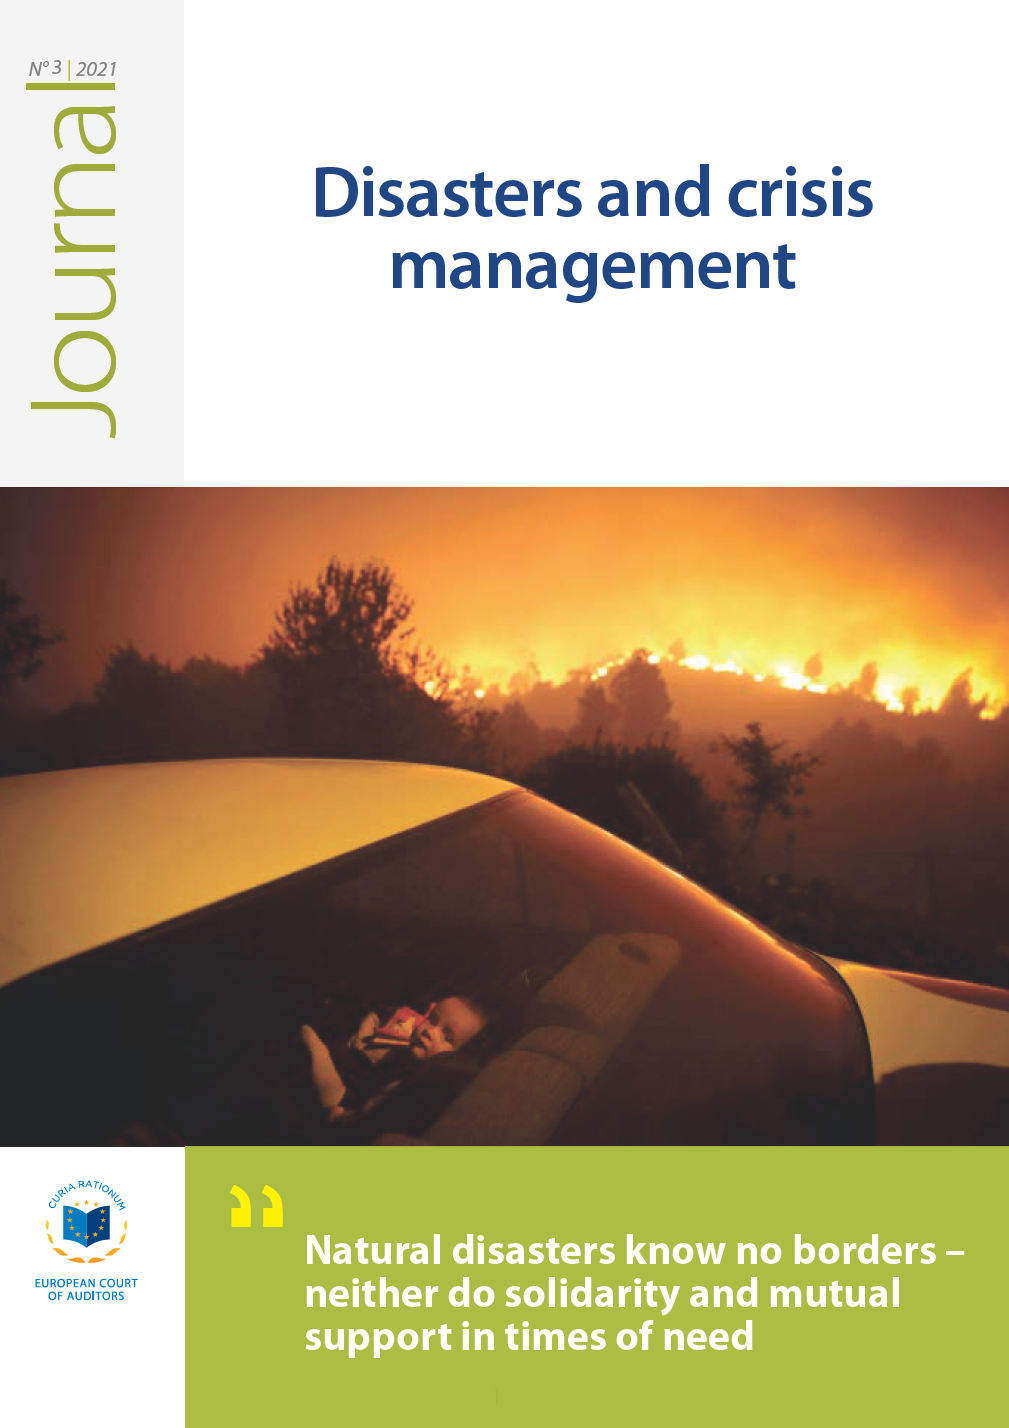 Journal de la Cour des comptes européenne n°03/2021 — Catastrophes et gestion des crises